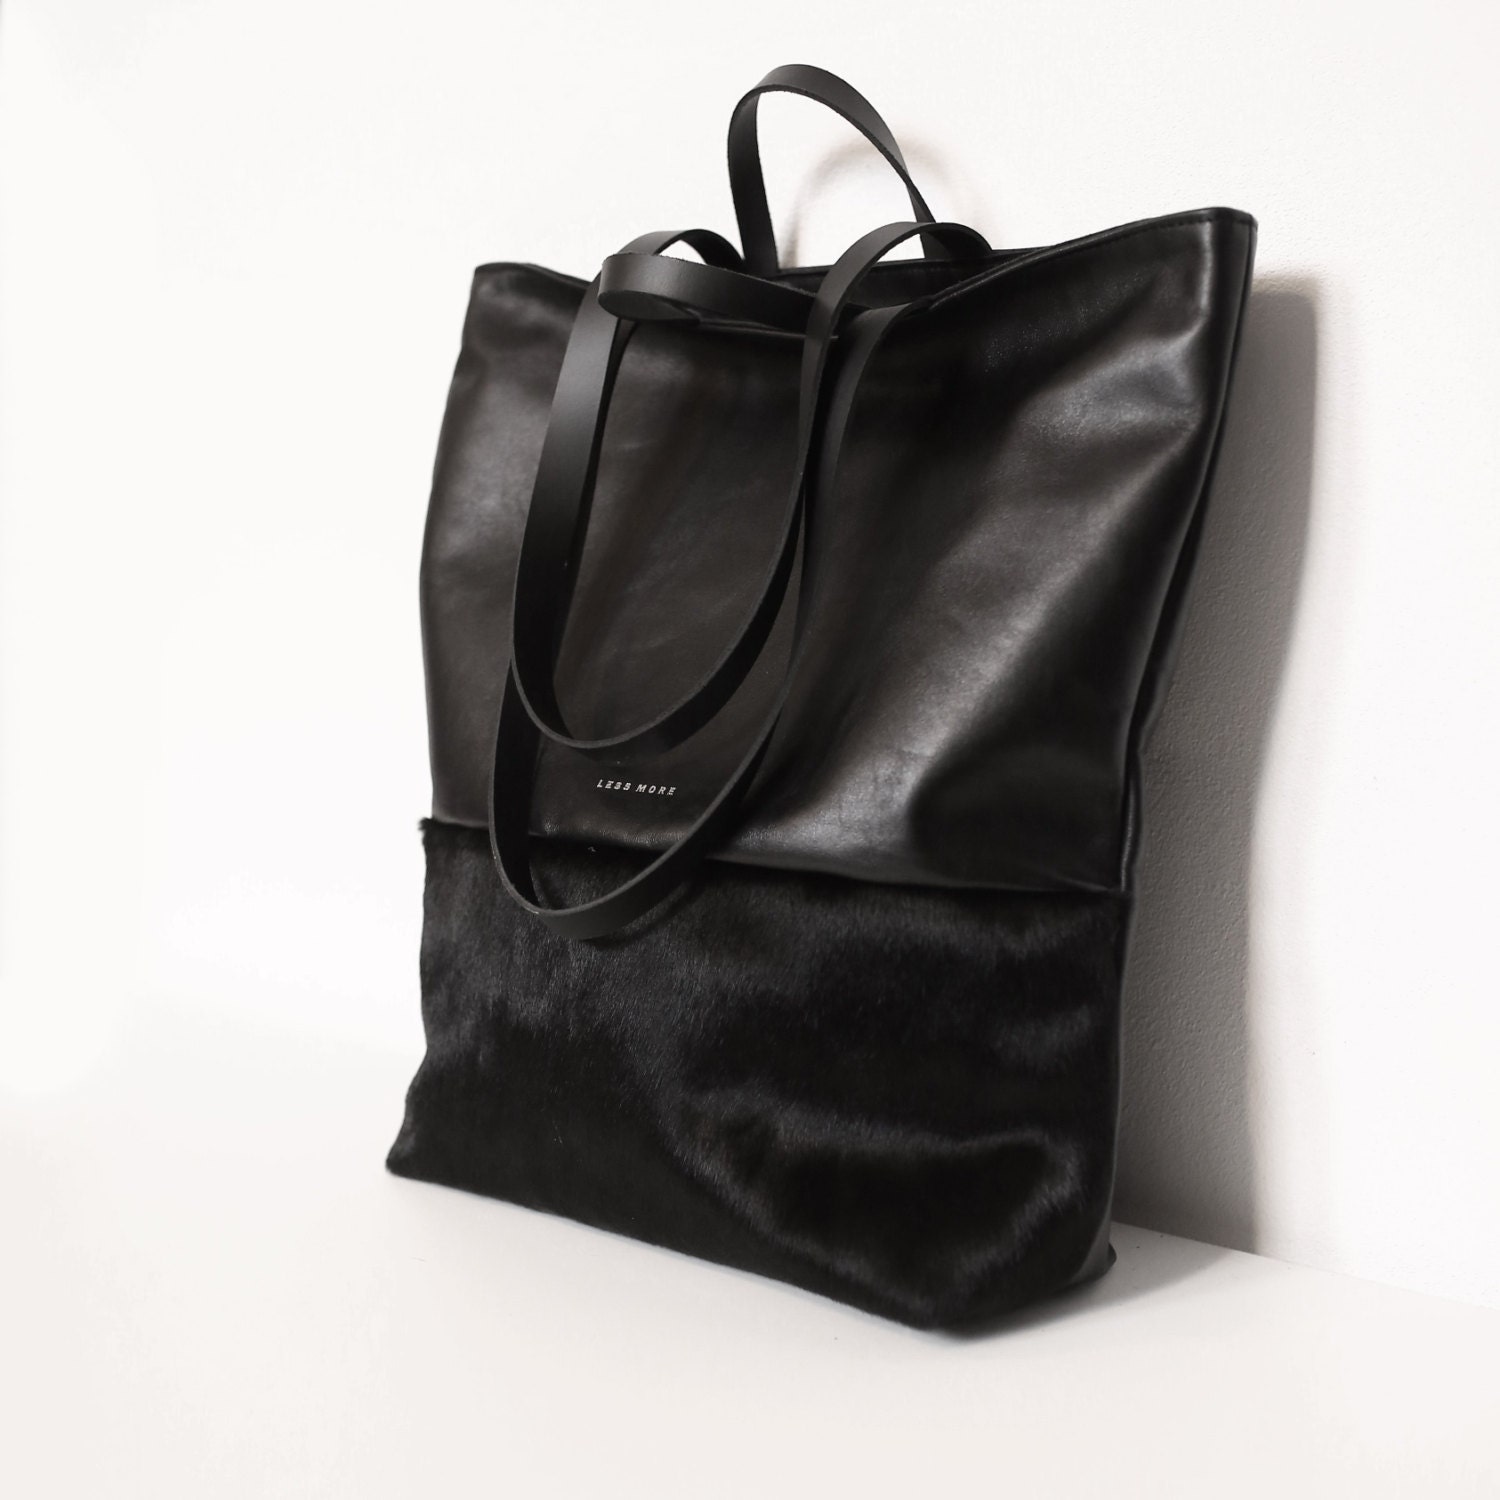 Black Leather Tote Bag Soft Leather Bag Shoulder Bag Every